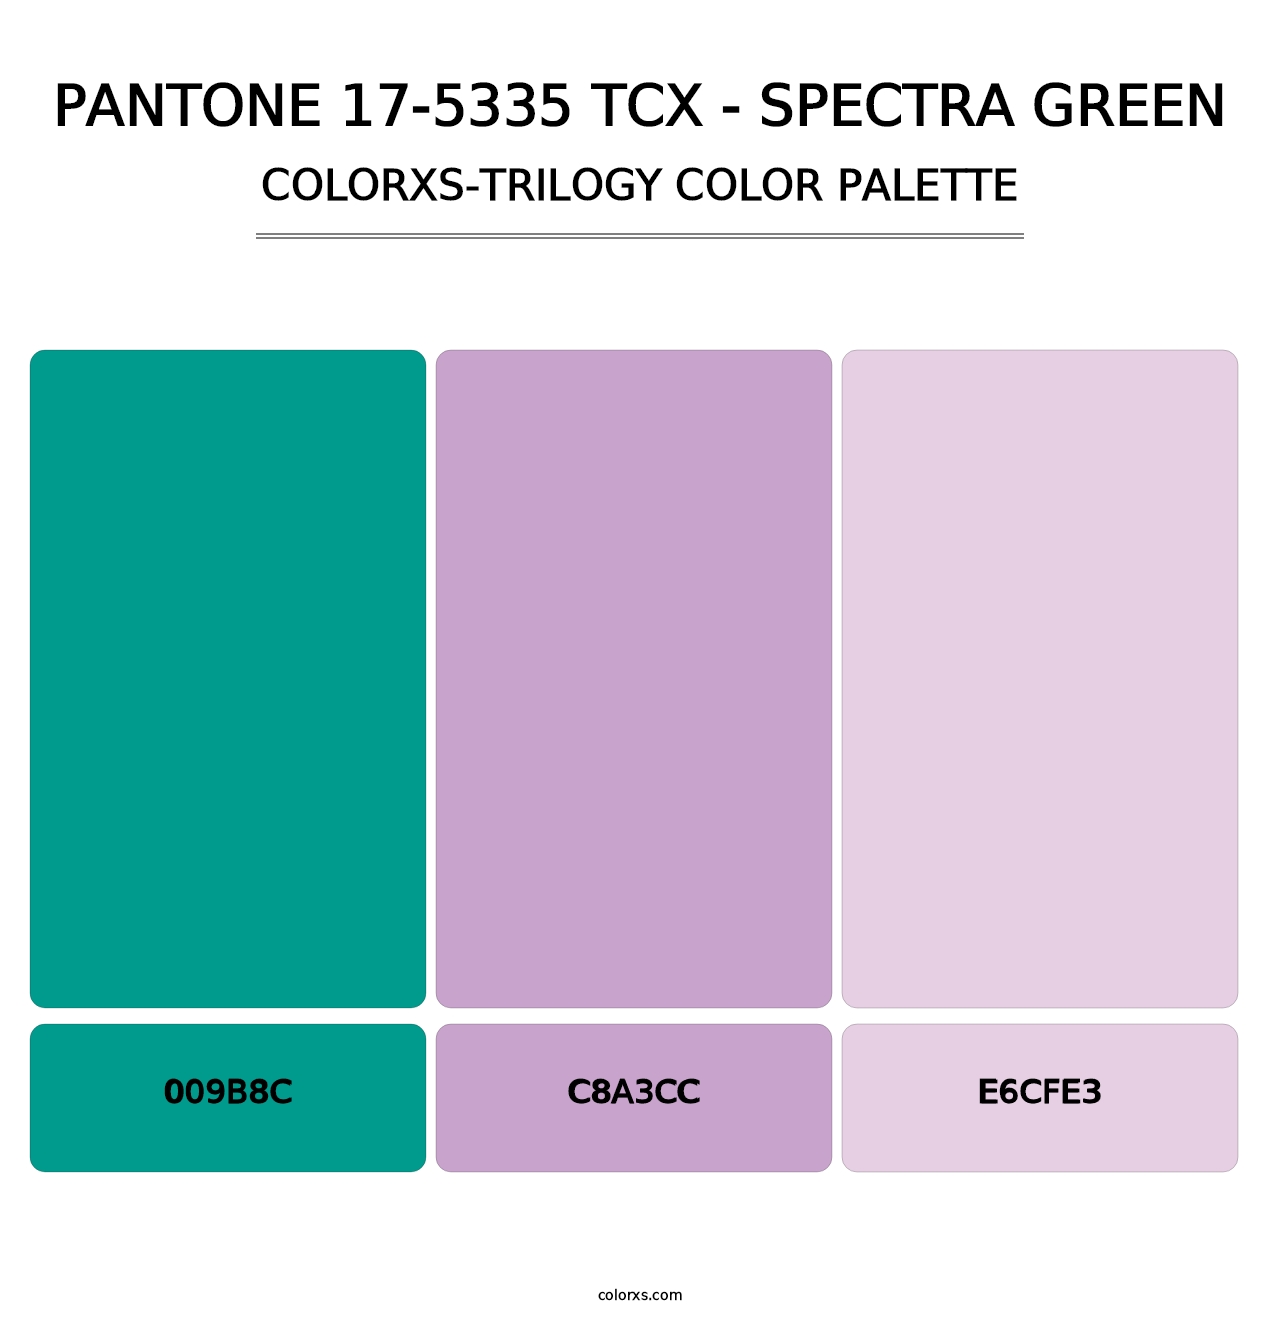 PANTONE 17-5335 TCX - Spectra Green - Colorxs Trilogy Palette